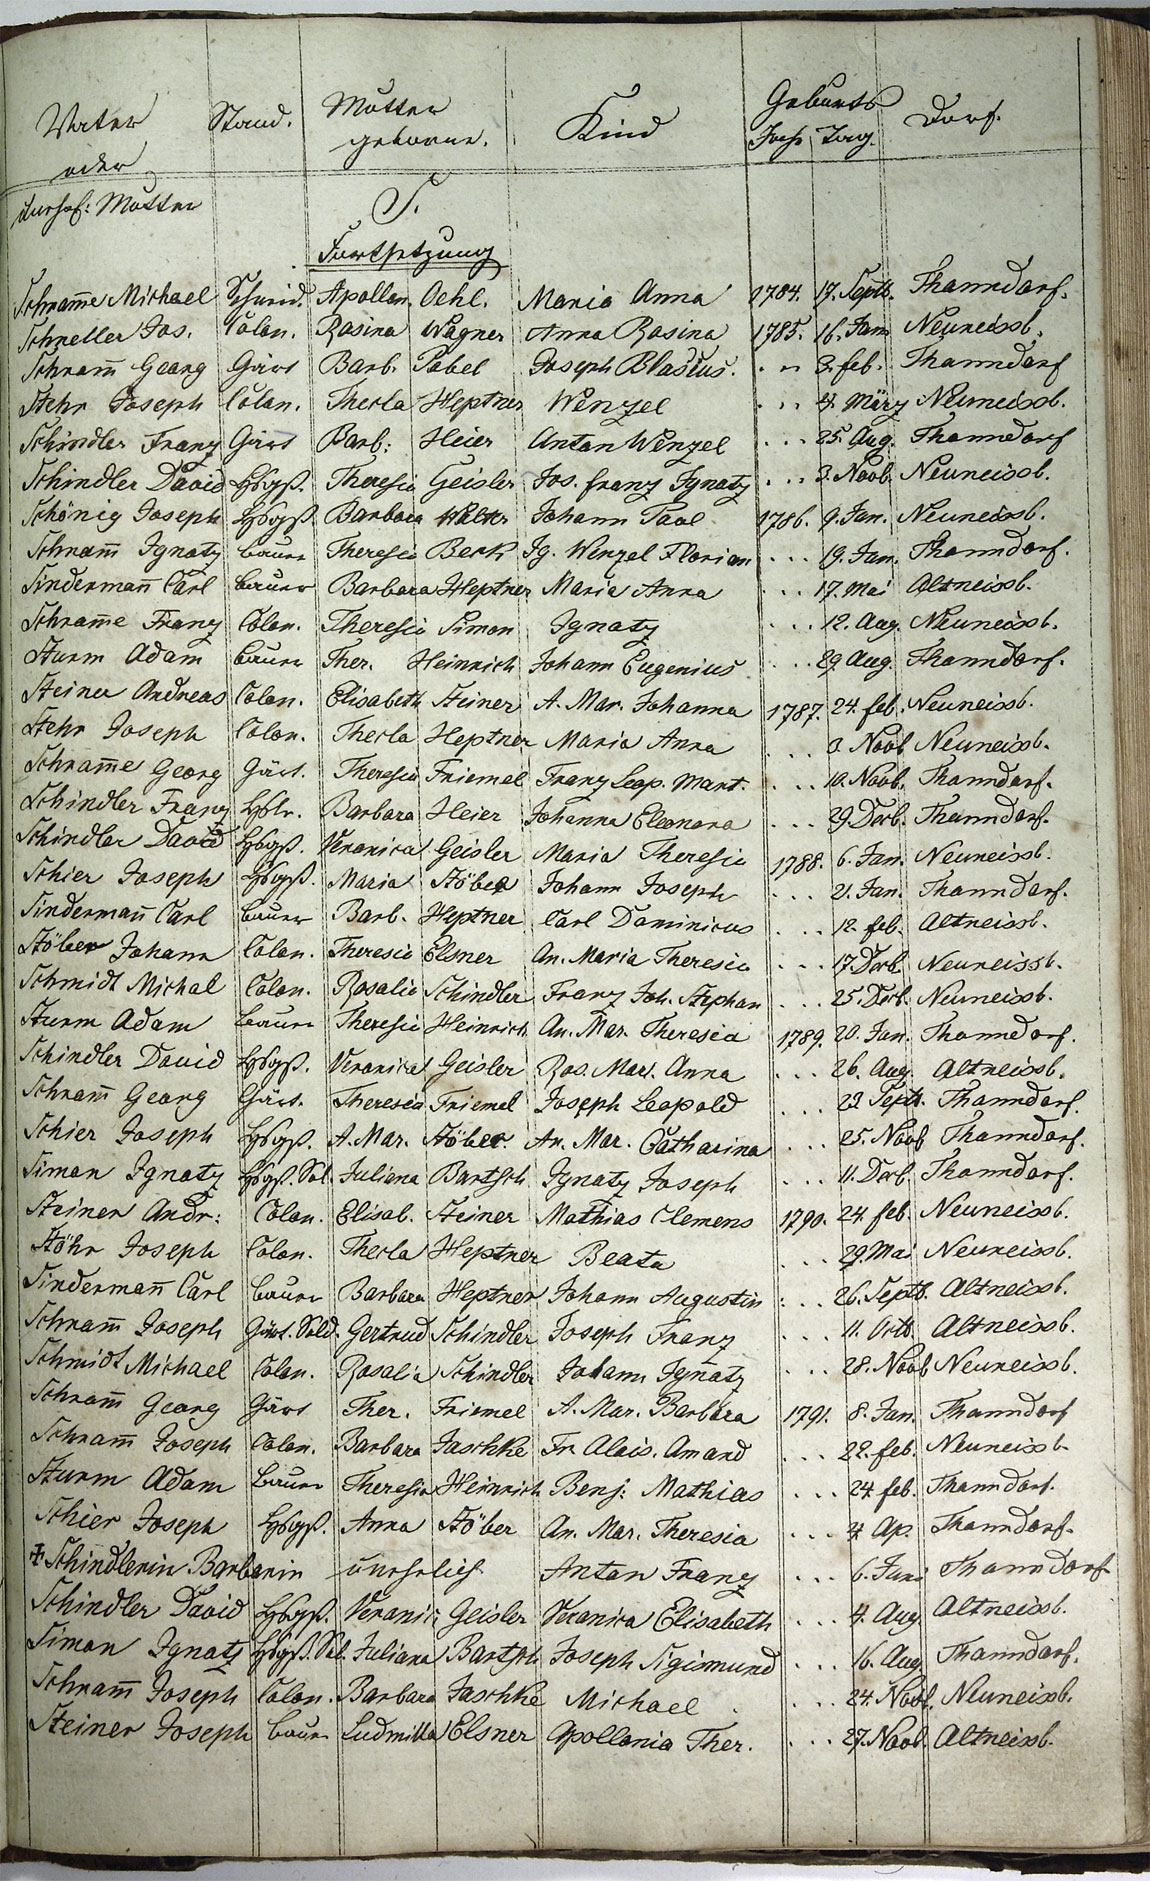 Taufregister 1770 - 1889 Seite 135